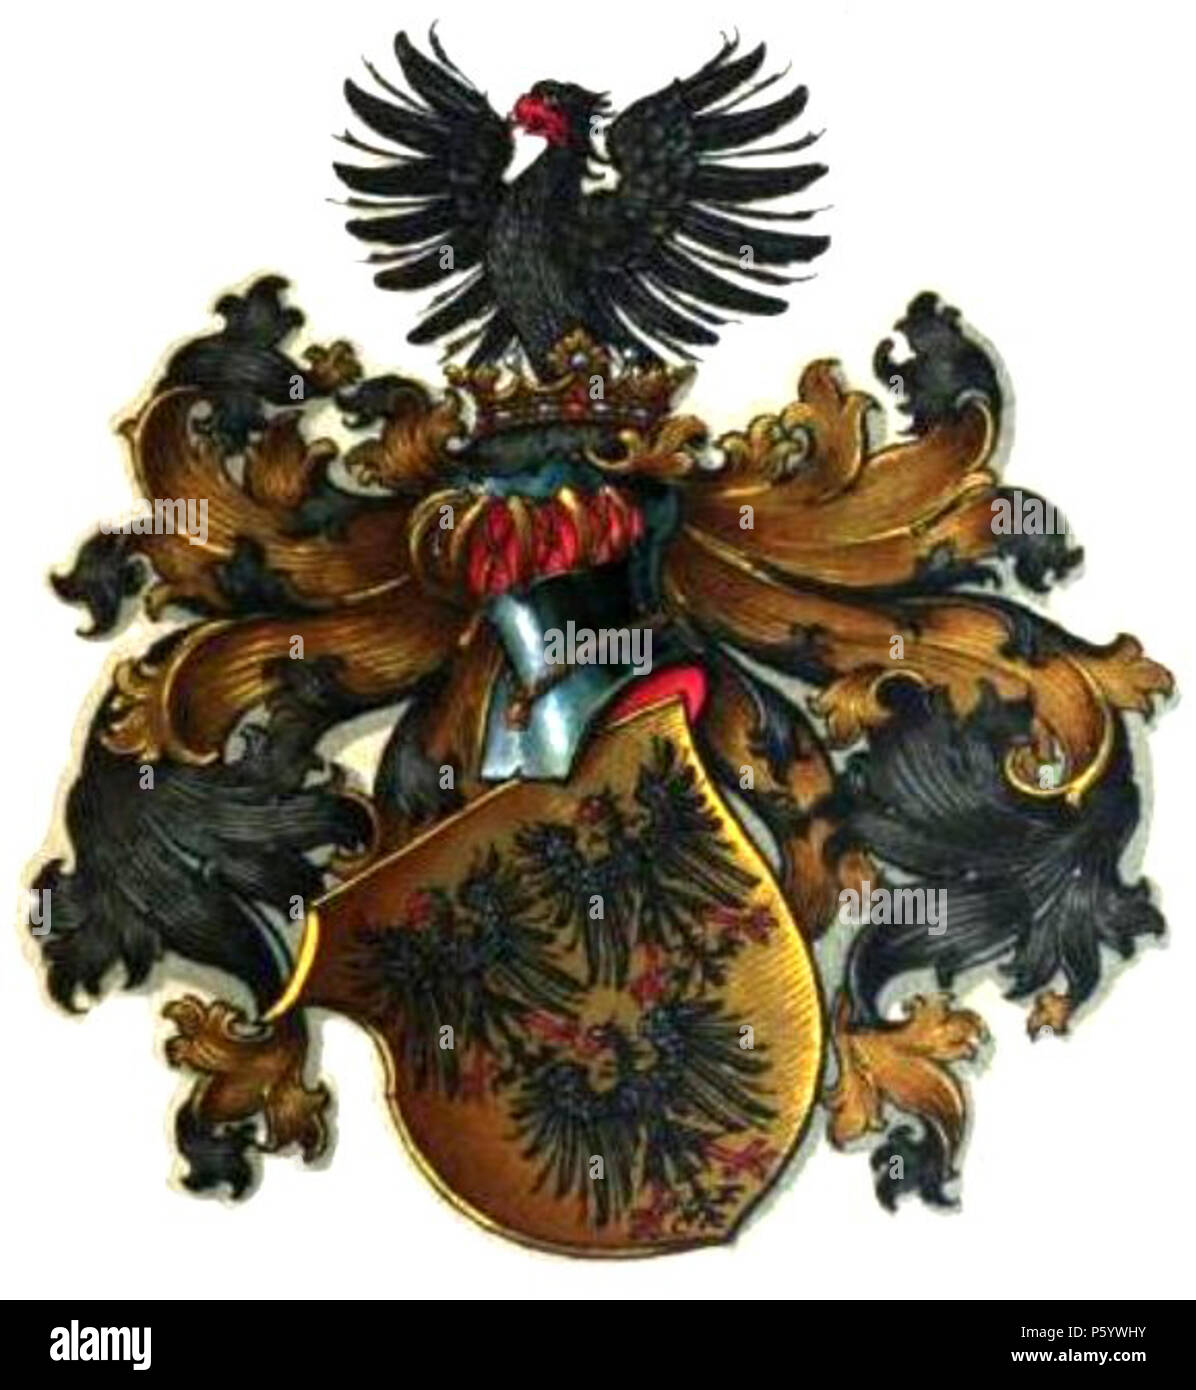 N/A. Deutsch: Das Wappen der Linie des Gottfried von Enckevort aus dem Jahre 1530 Datum: 1530 Urheber: unbekannter Herardiker Quelle: http://www.rambow.de/familie-von-enckevort.html#!prettyPhoto Link zum Bild: http://t0.gstatic.com/imagesq=tbn:ANd9GcSIn06dikZGle2dkAzPGsygr90U4oDJVZgaDsU-W1CnubMq8SgFHQ  . 1530. unbekannter Heraldiker 547 Familienwappen von Enckevort 1530 Stock Photo